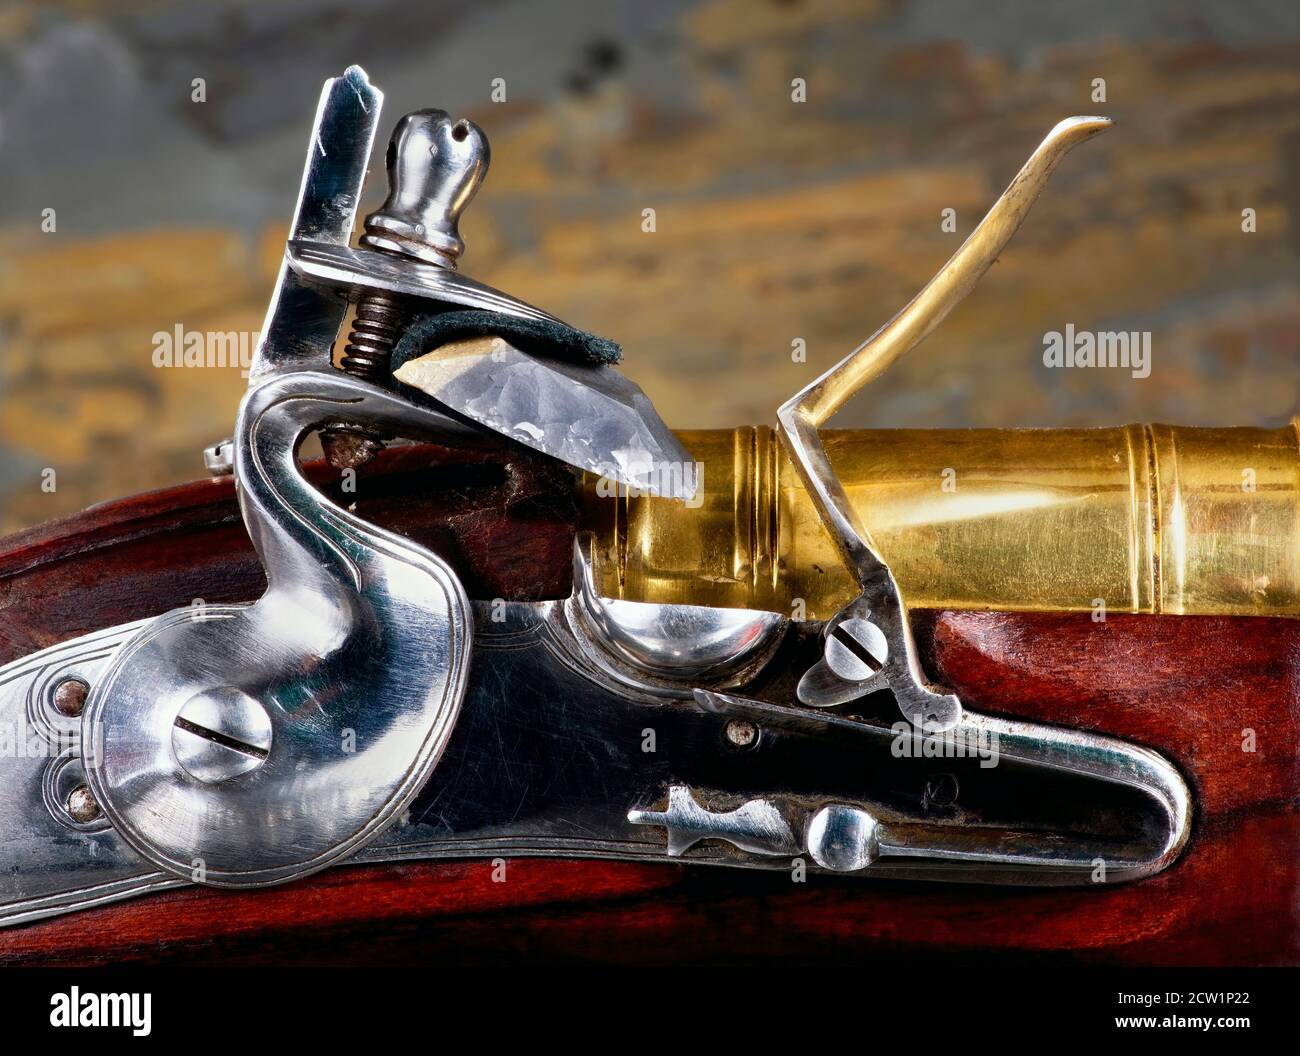 Closeup of antique flintlock gun showing the hammer ,flint , pan and frizzen. Stock Photo